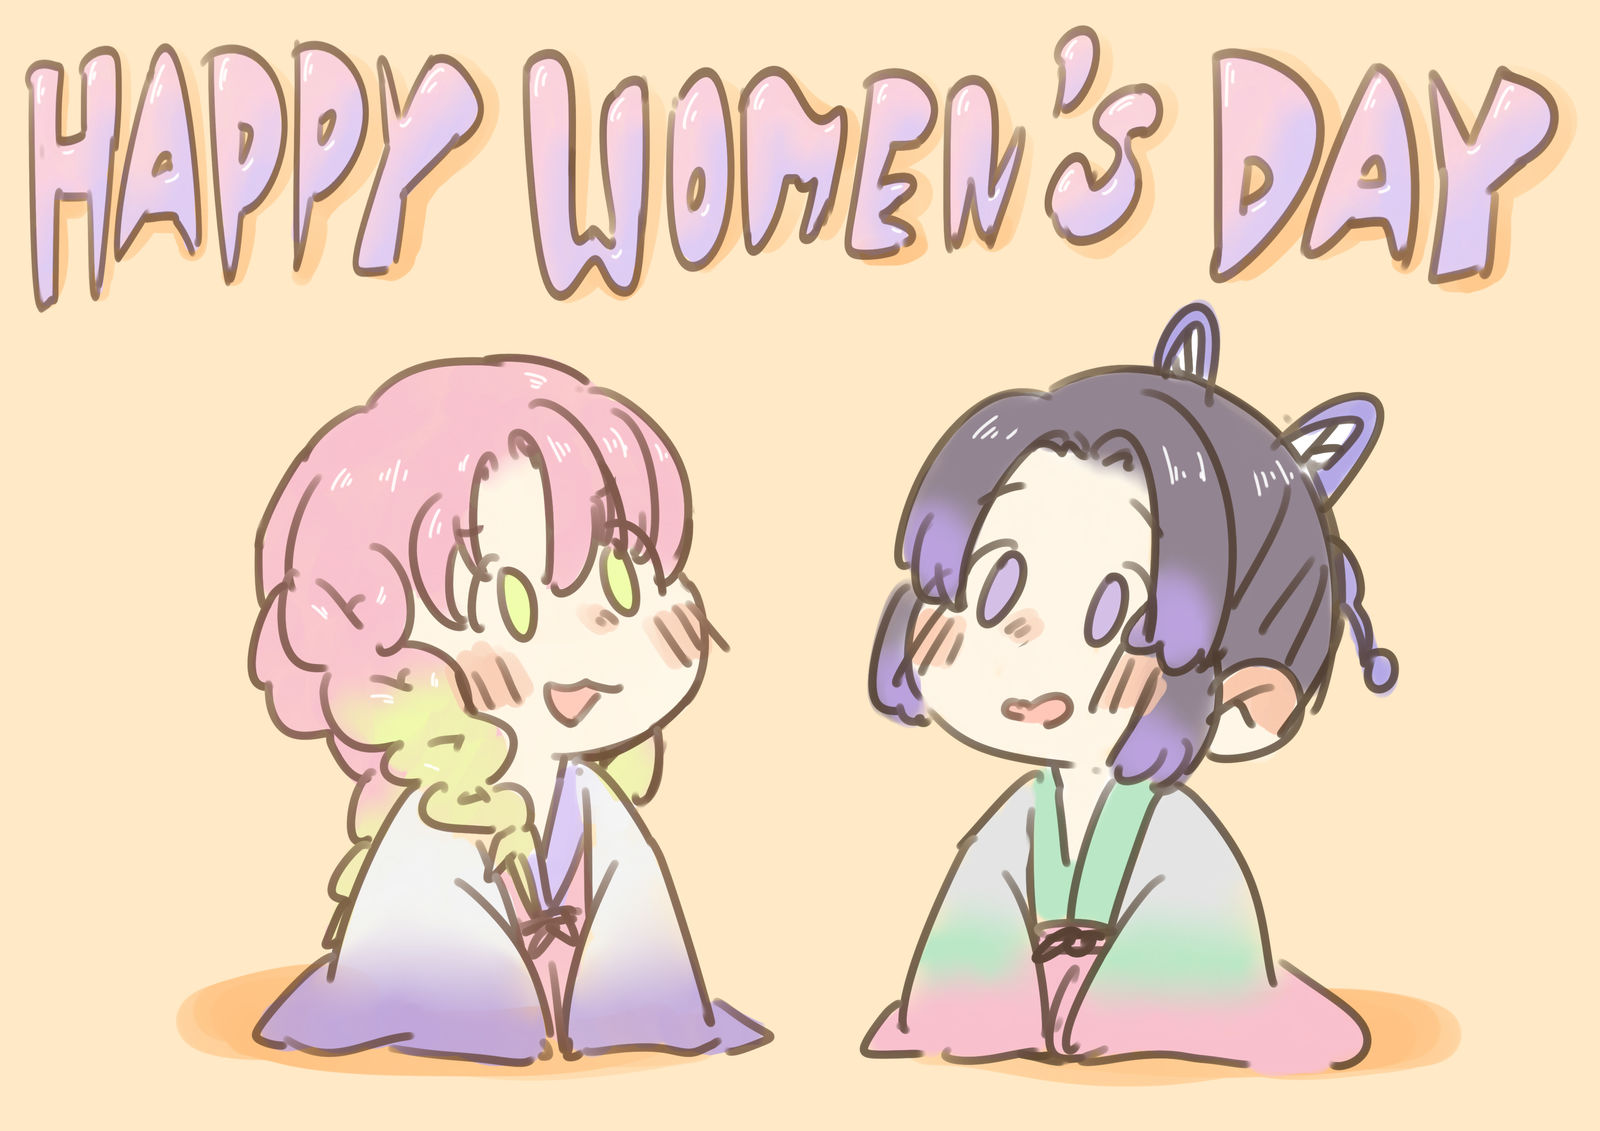 HAPPY WOMEN'S DAY!插画图片壁纸